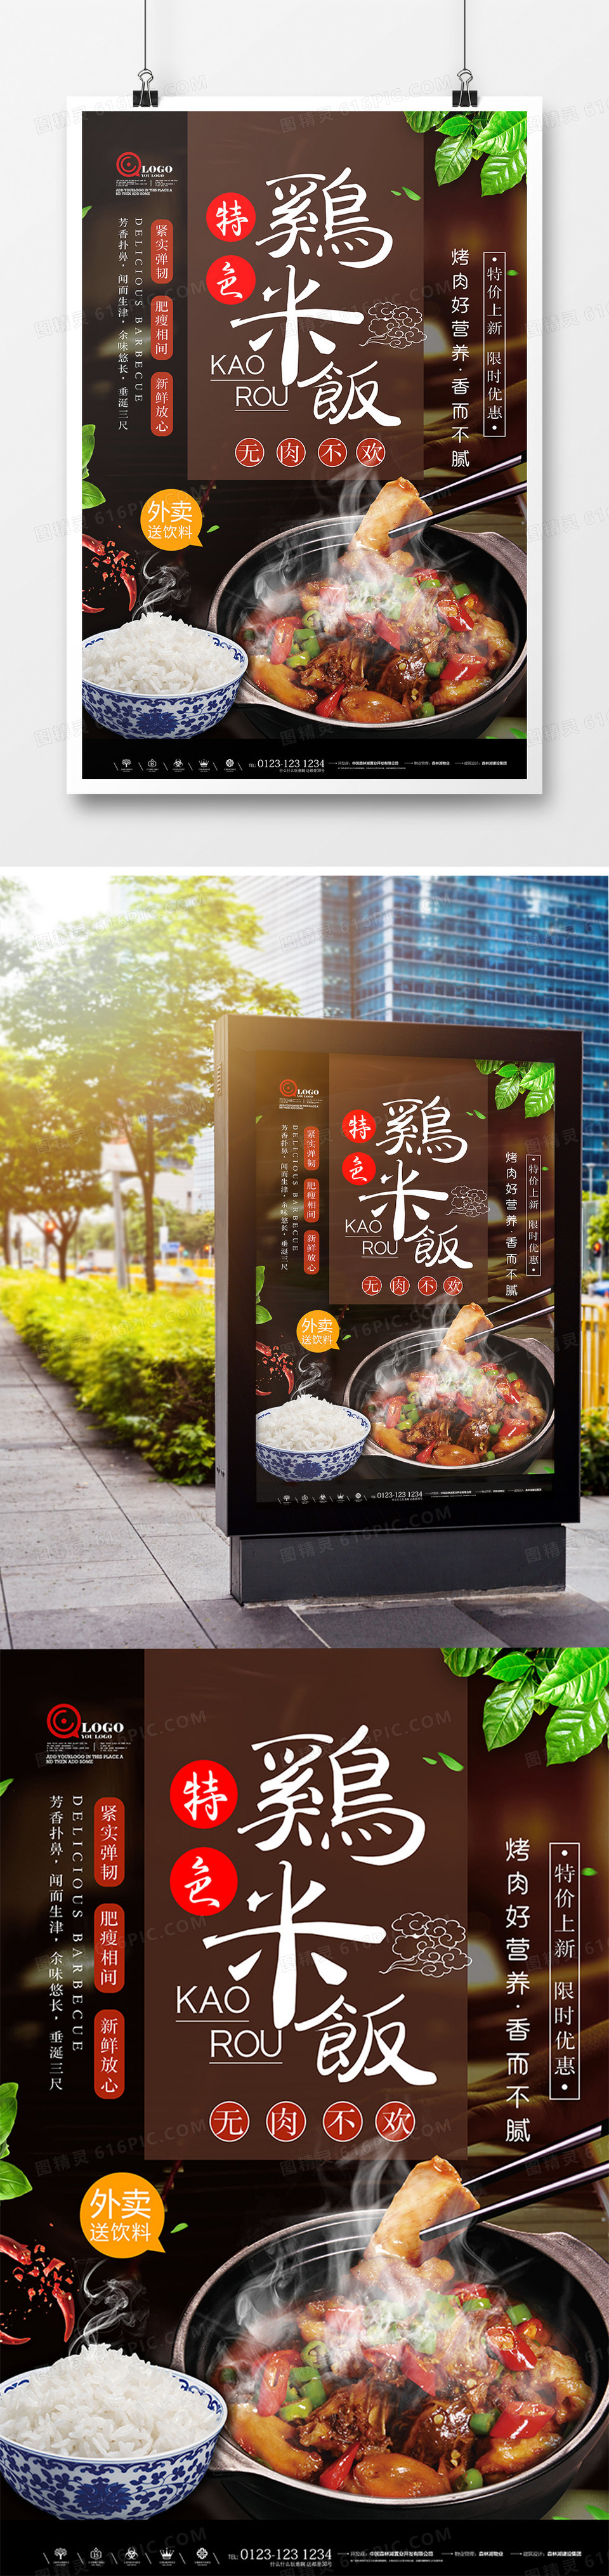 创意美食黄焖鸡米饭餐饮海报设计